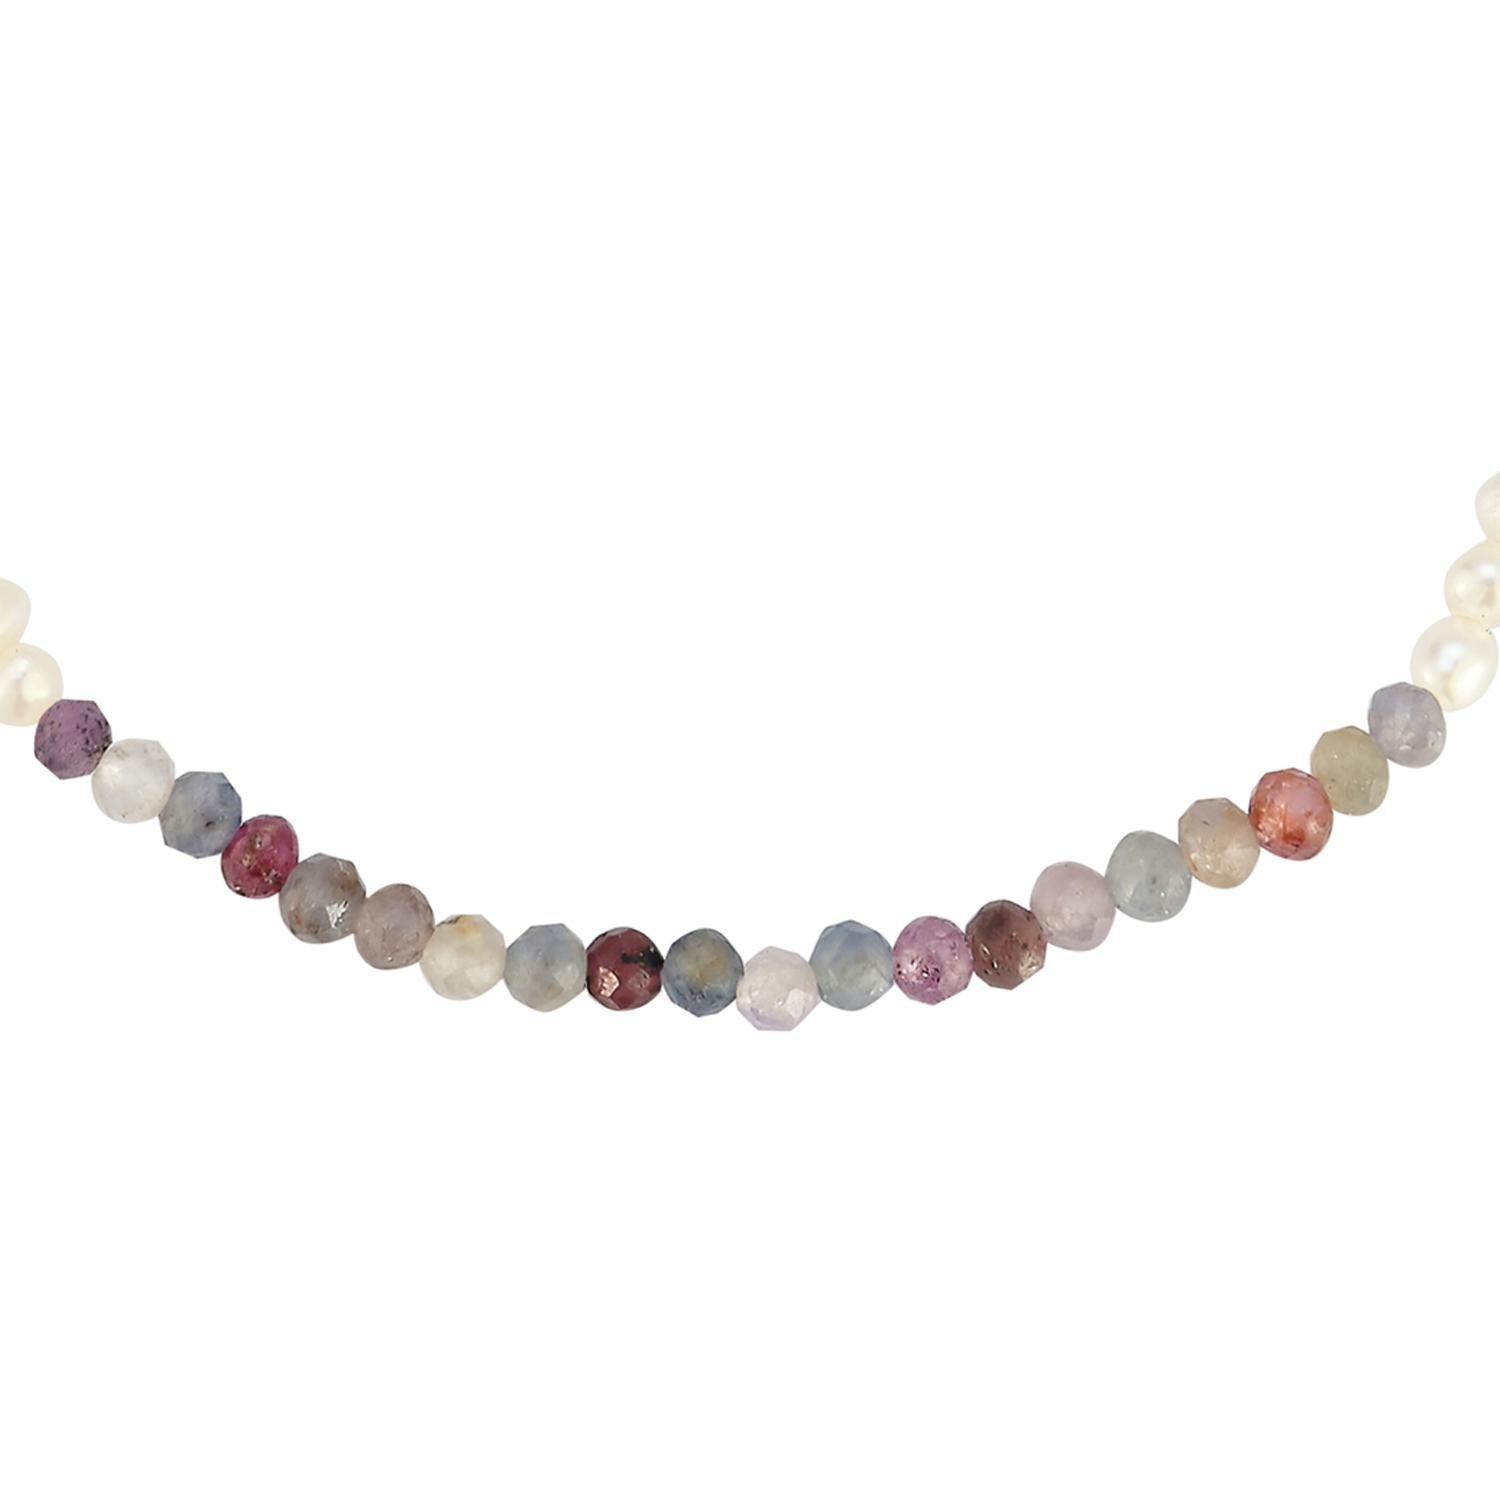 Dies ist kein gewöhnliches Perlenarmband mit einem Farbklecks in Form eines Farbblocks mit facettierten Halbedelsteinen in den Farben Saphir und Rubin. Ein großartiges, lässiges Lagenarmband für alle Jahreszeiten, wenn Sie Ihre Armbänder gerne mit